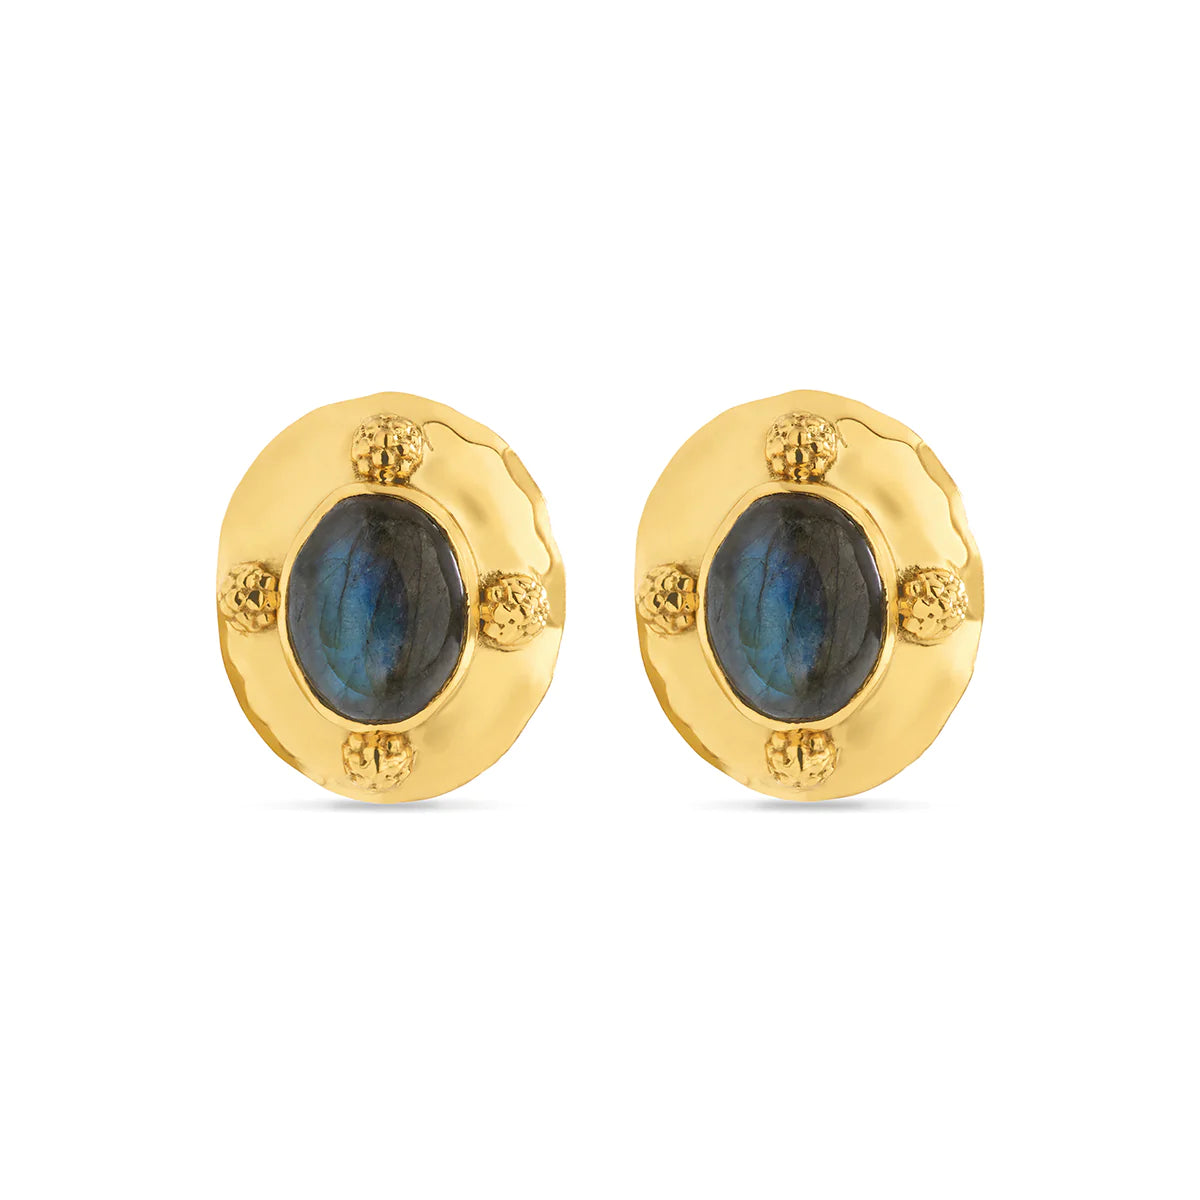 Capucine de Wulf Cleopatra Oval Earrings in Gold/Blue Labradorite